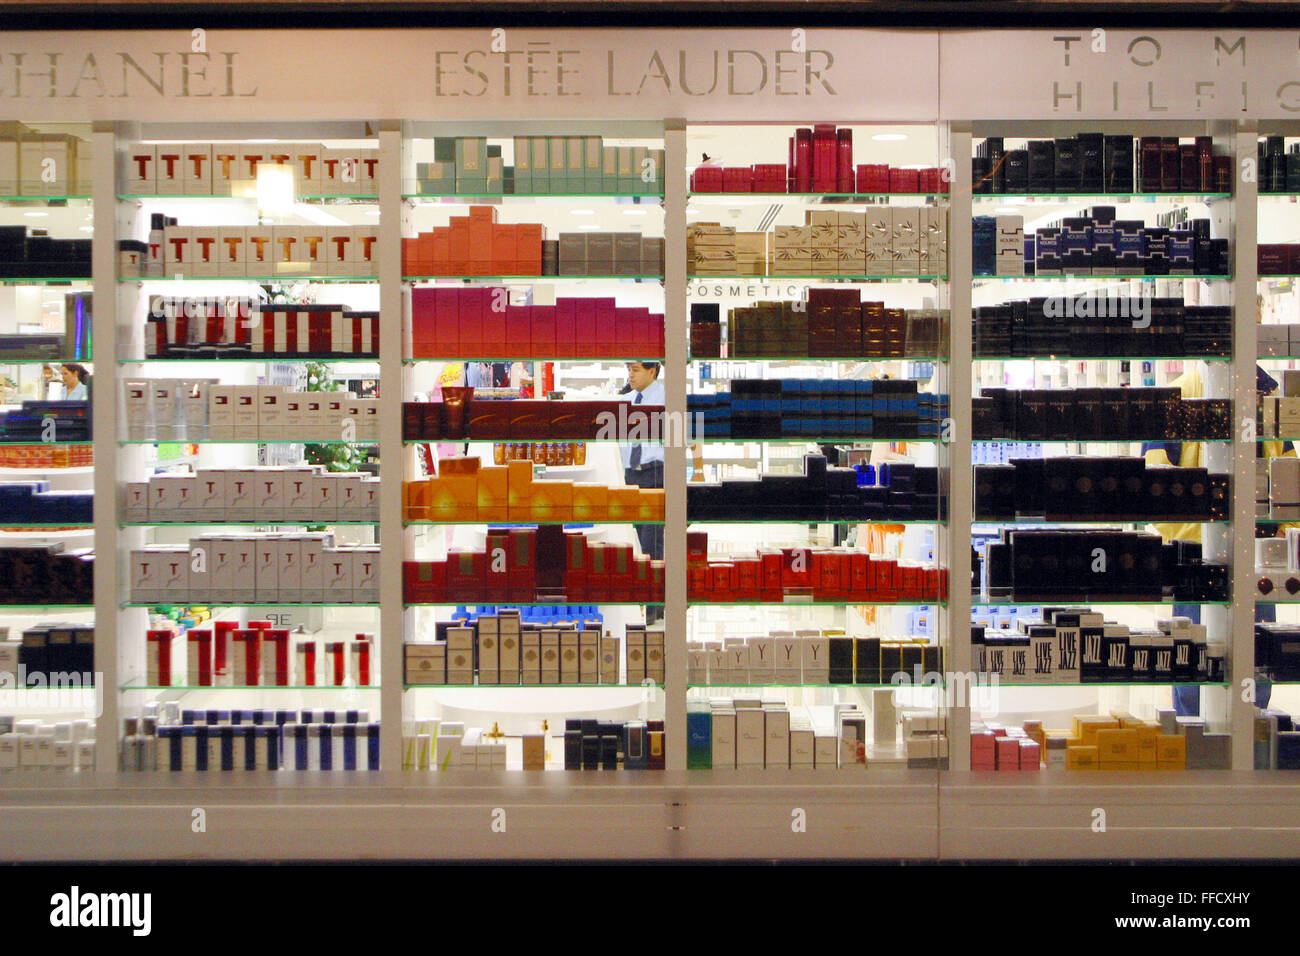 Tienda de perfumes españa fotografías e imágenes de alta resolución -  Página 2 - Alamy